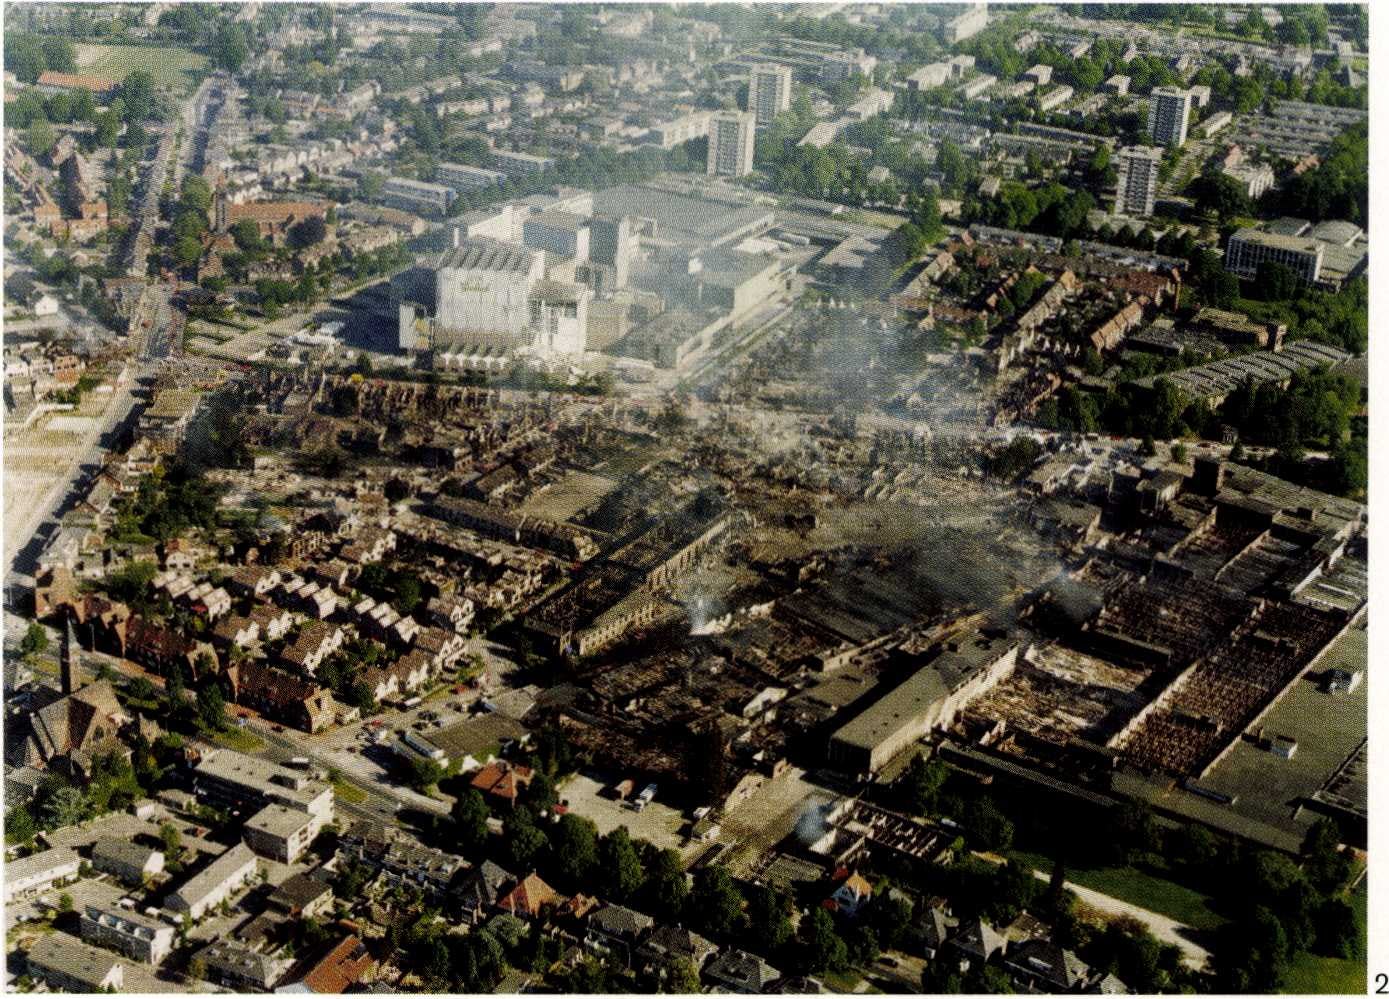 Luchtfoto van Roombeek,
vlak na de vuurwerkramp